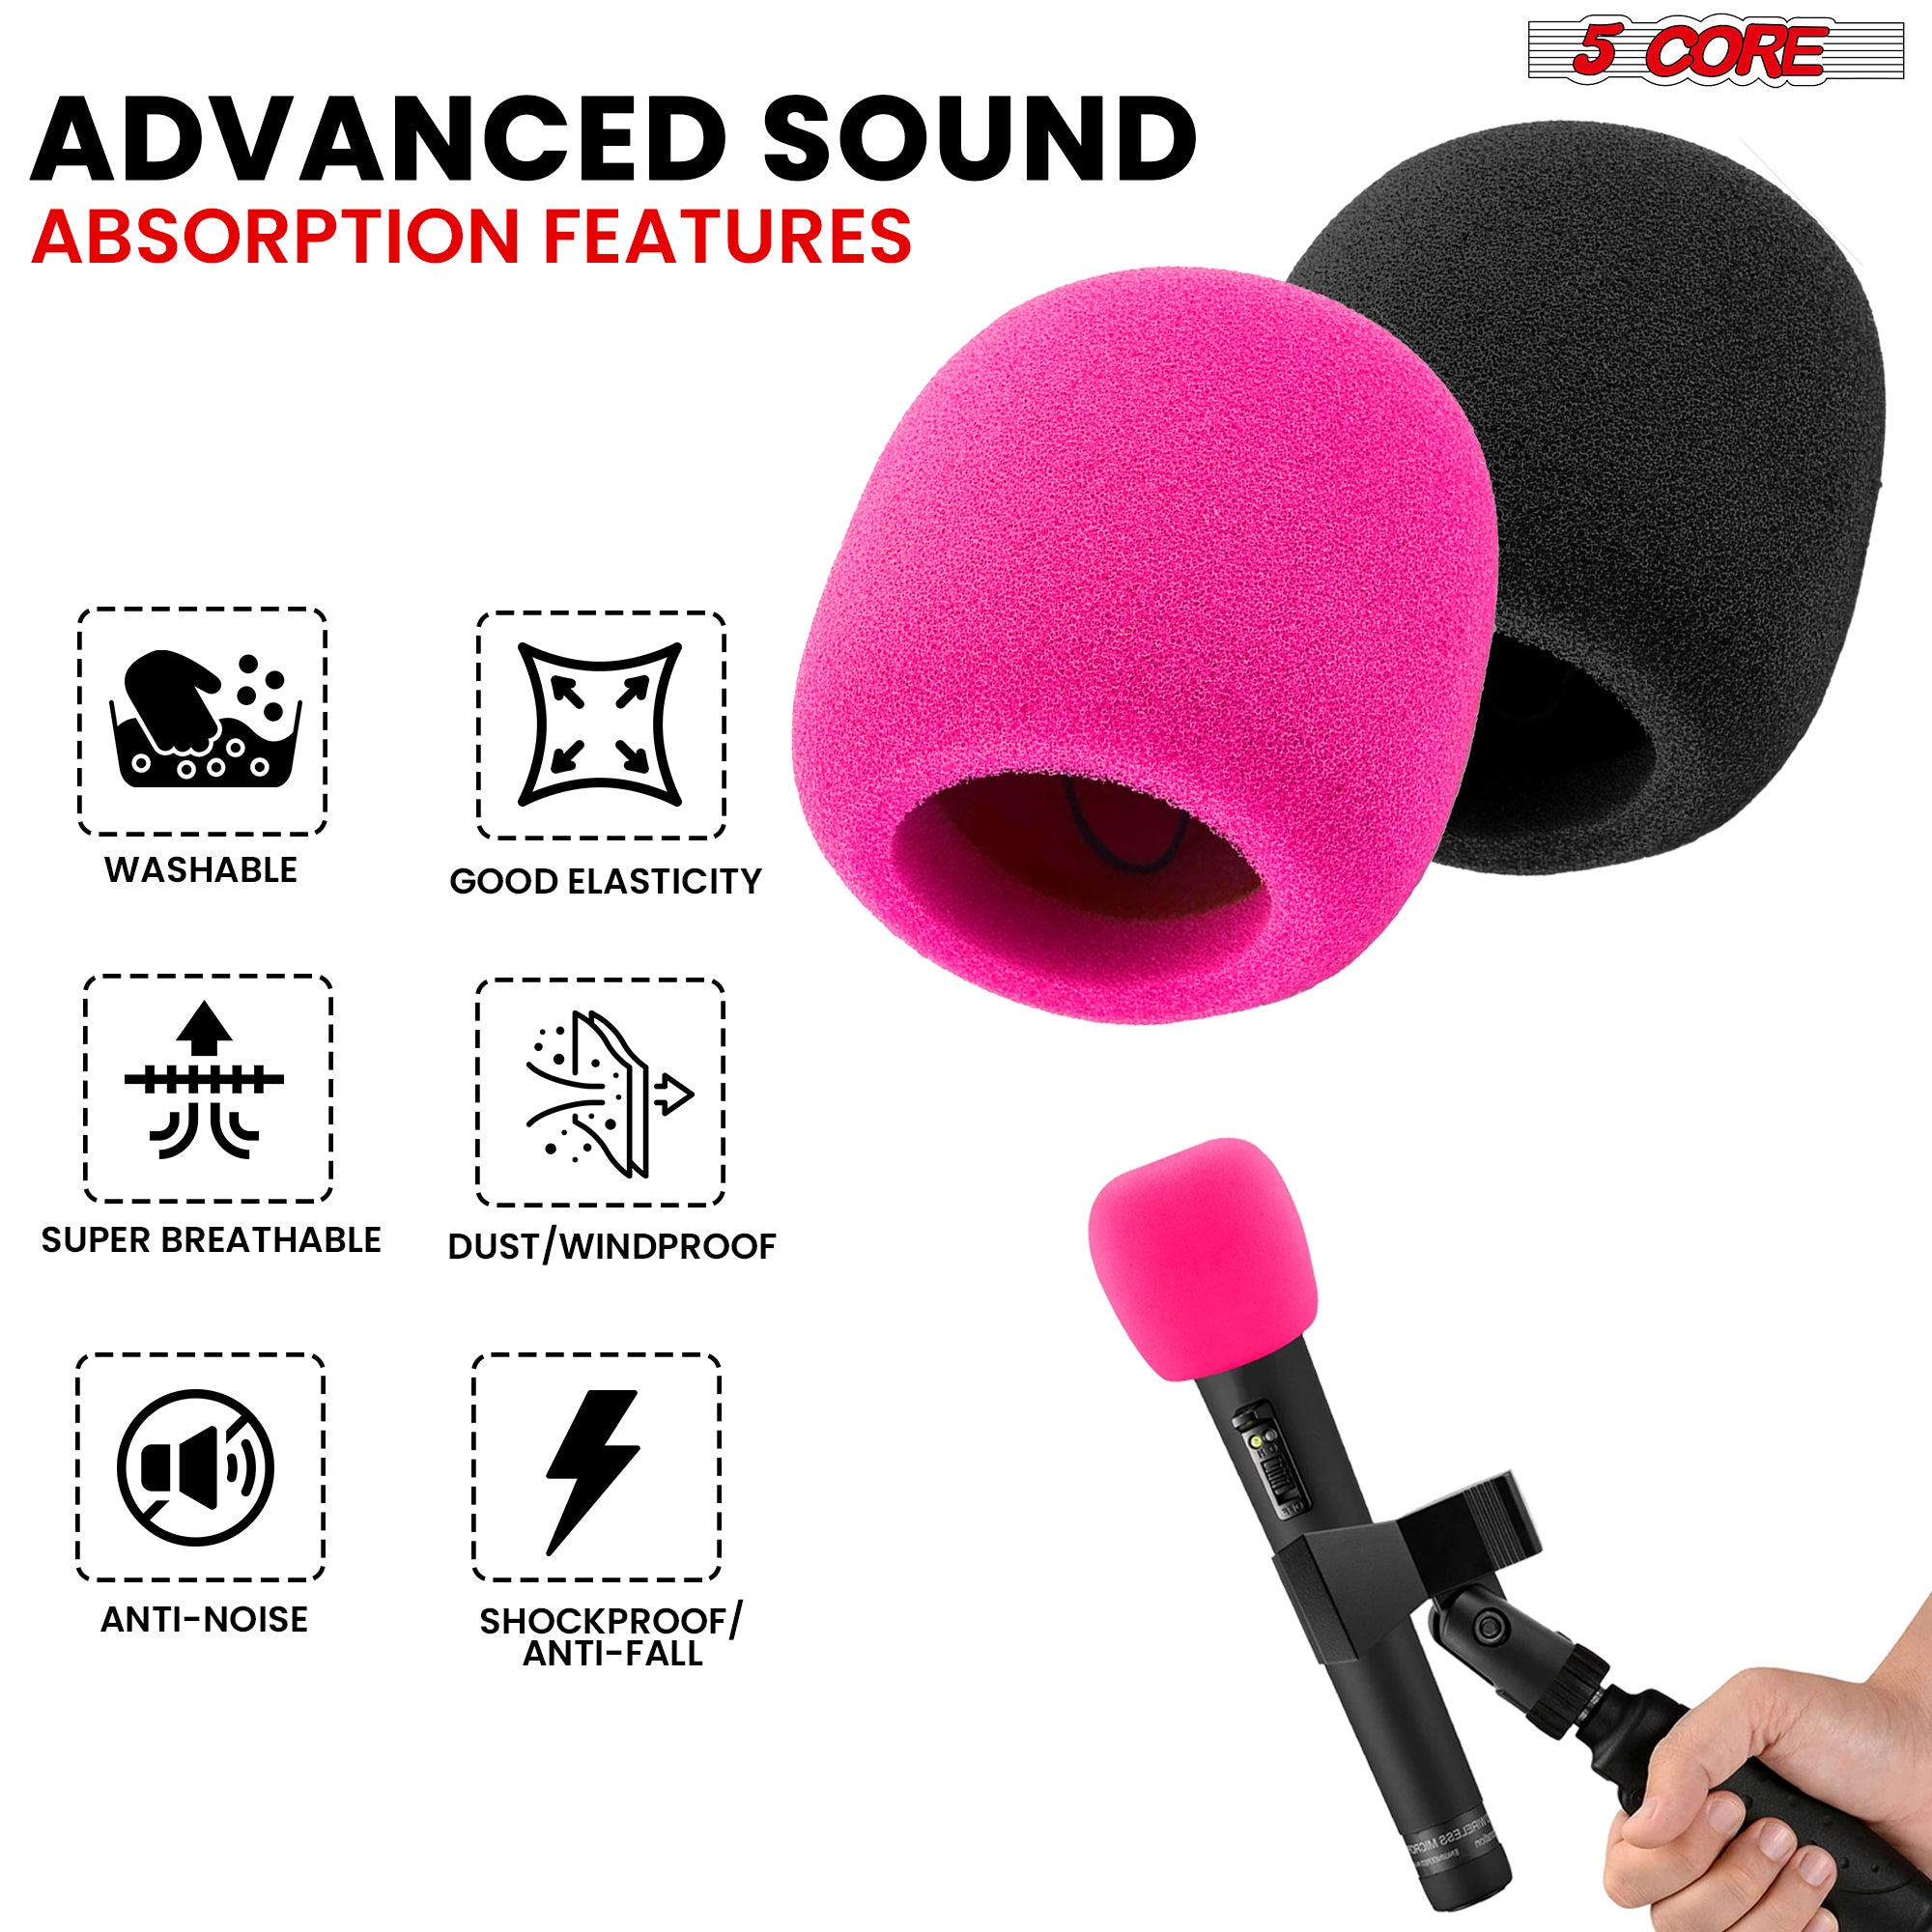 5Core Microphone Cover Professional Mic Soft Foam Windscreen Windproof Sponge for Mics